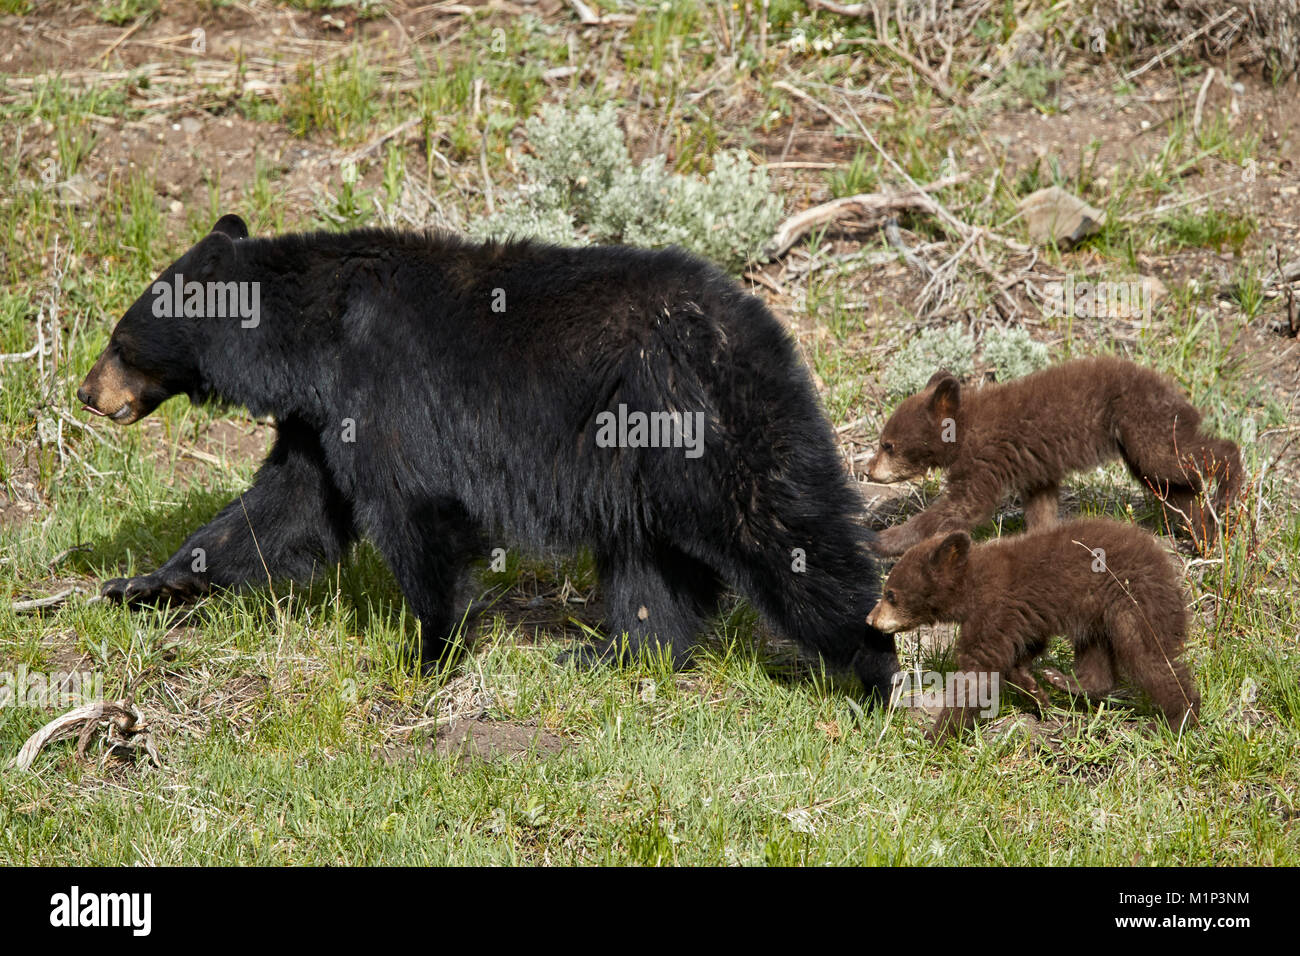 L'ours noir (Ursus americanus) sow et deux oursons au chocolat de l'année, le Parc National de Yellowstone, Wyoming, États-Unis d'Amérique, Amérique du Nord Banque D'Images